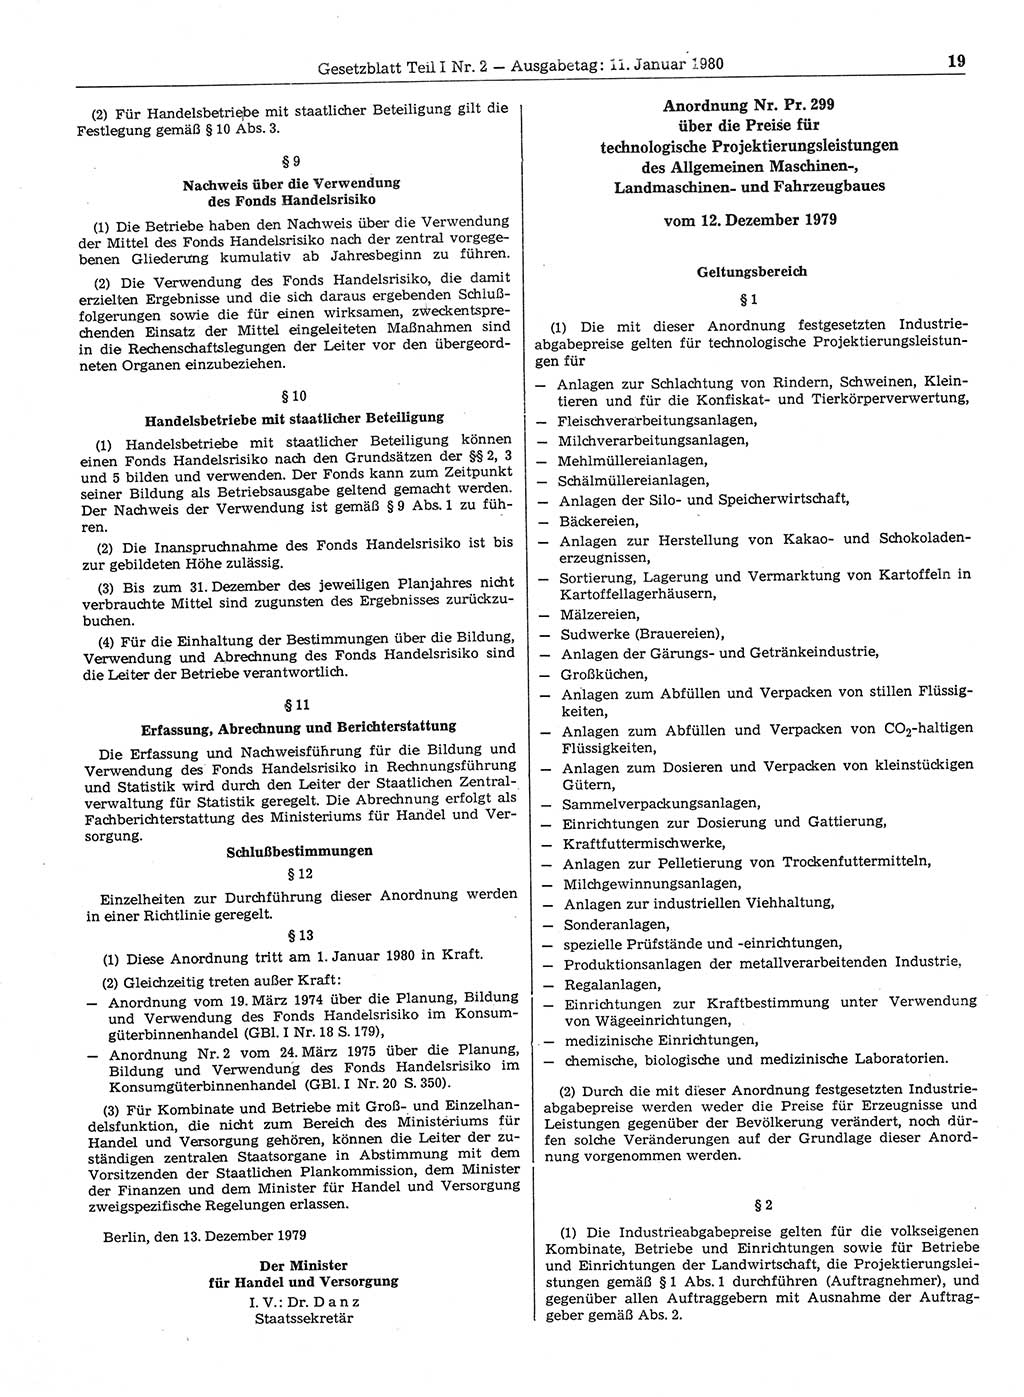 Gesetzblatt (GBl.) der Deutschen Demokratischen Republik (DDR) Teil Ⅰ 1980, Seite 19 (GBl. DDR Ⅰ 1980, S. 19)